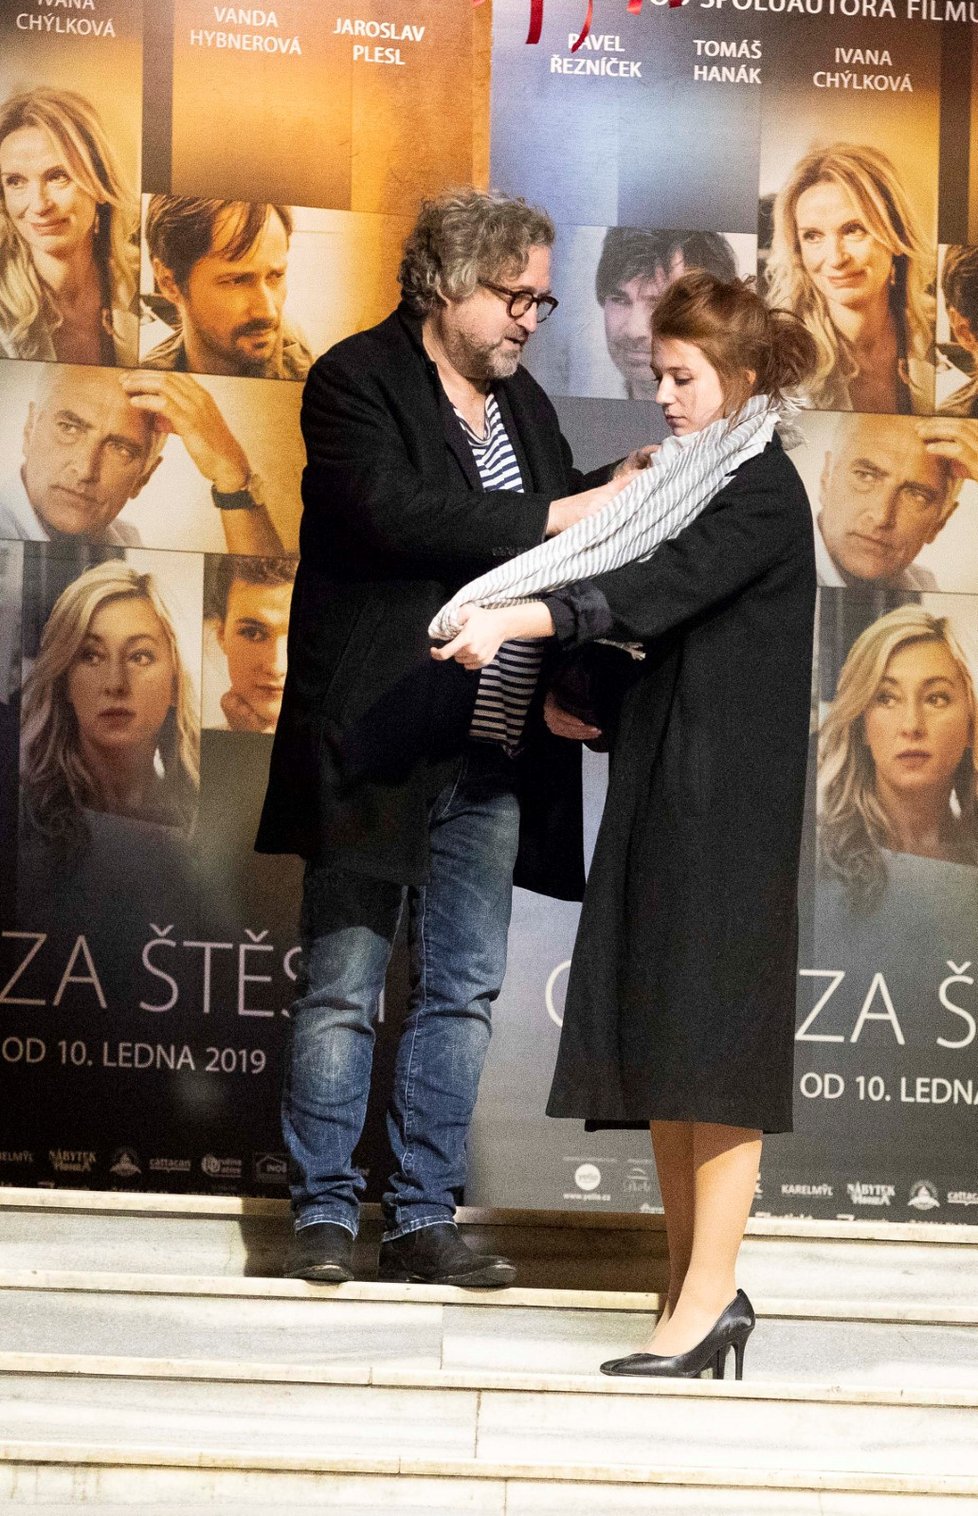 Premiéra filmu Cena za štěstí: Jan Hřebejk s mladou herečkou k sobě měli blízko